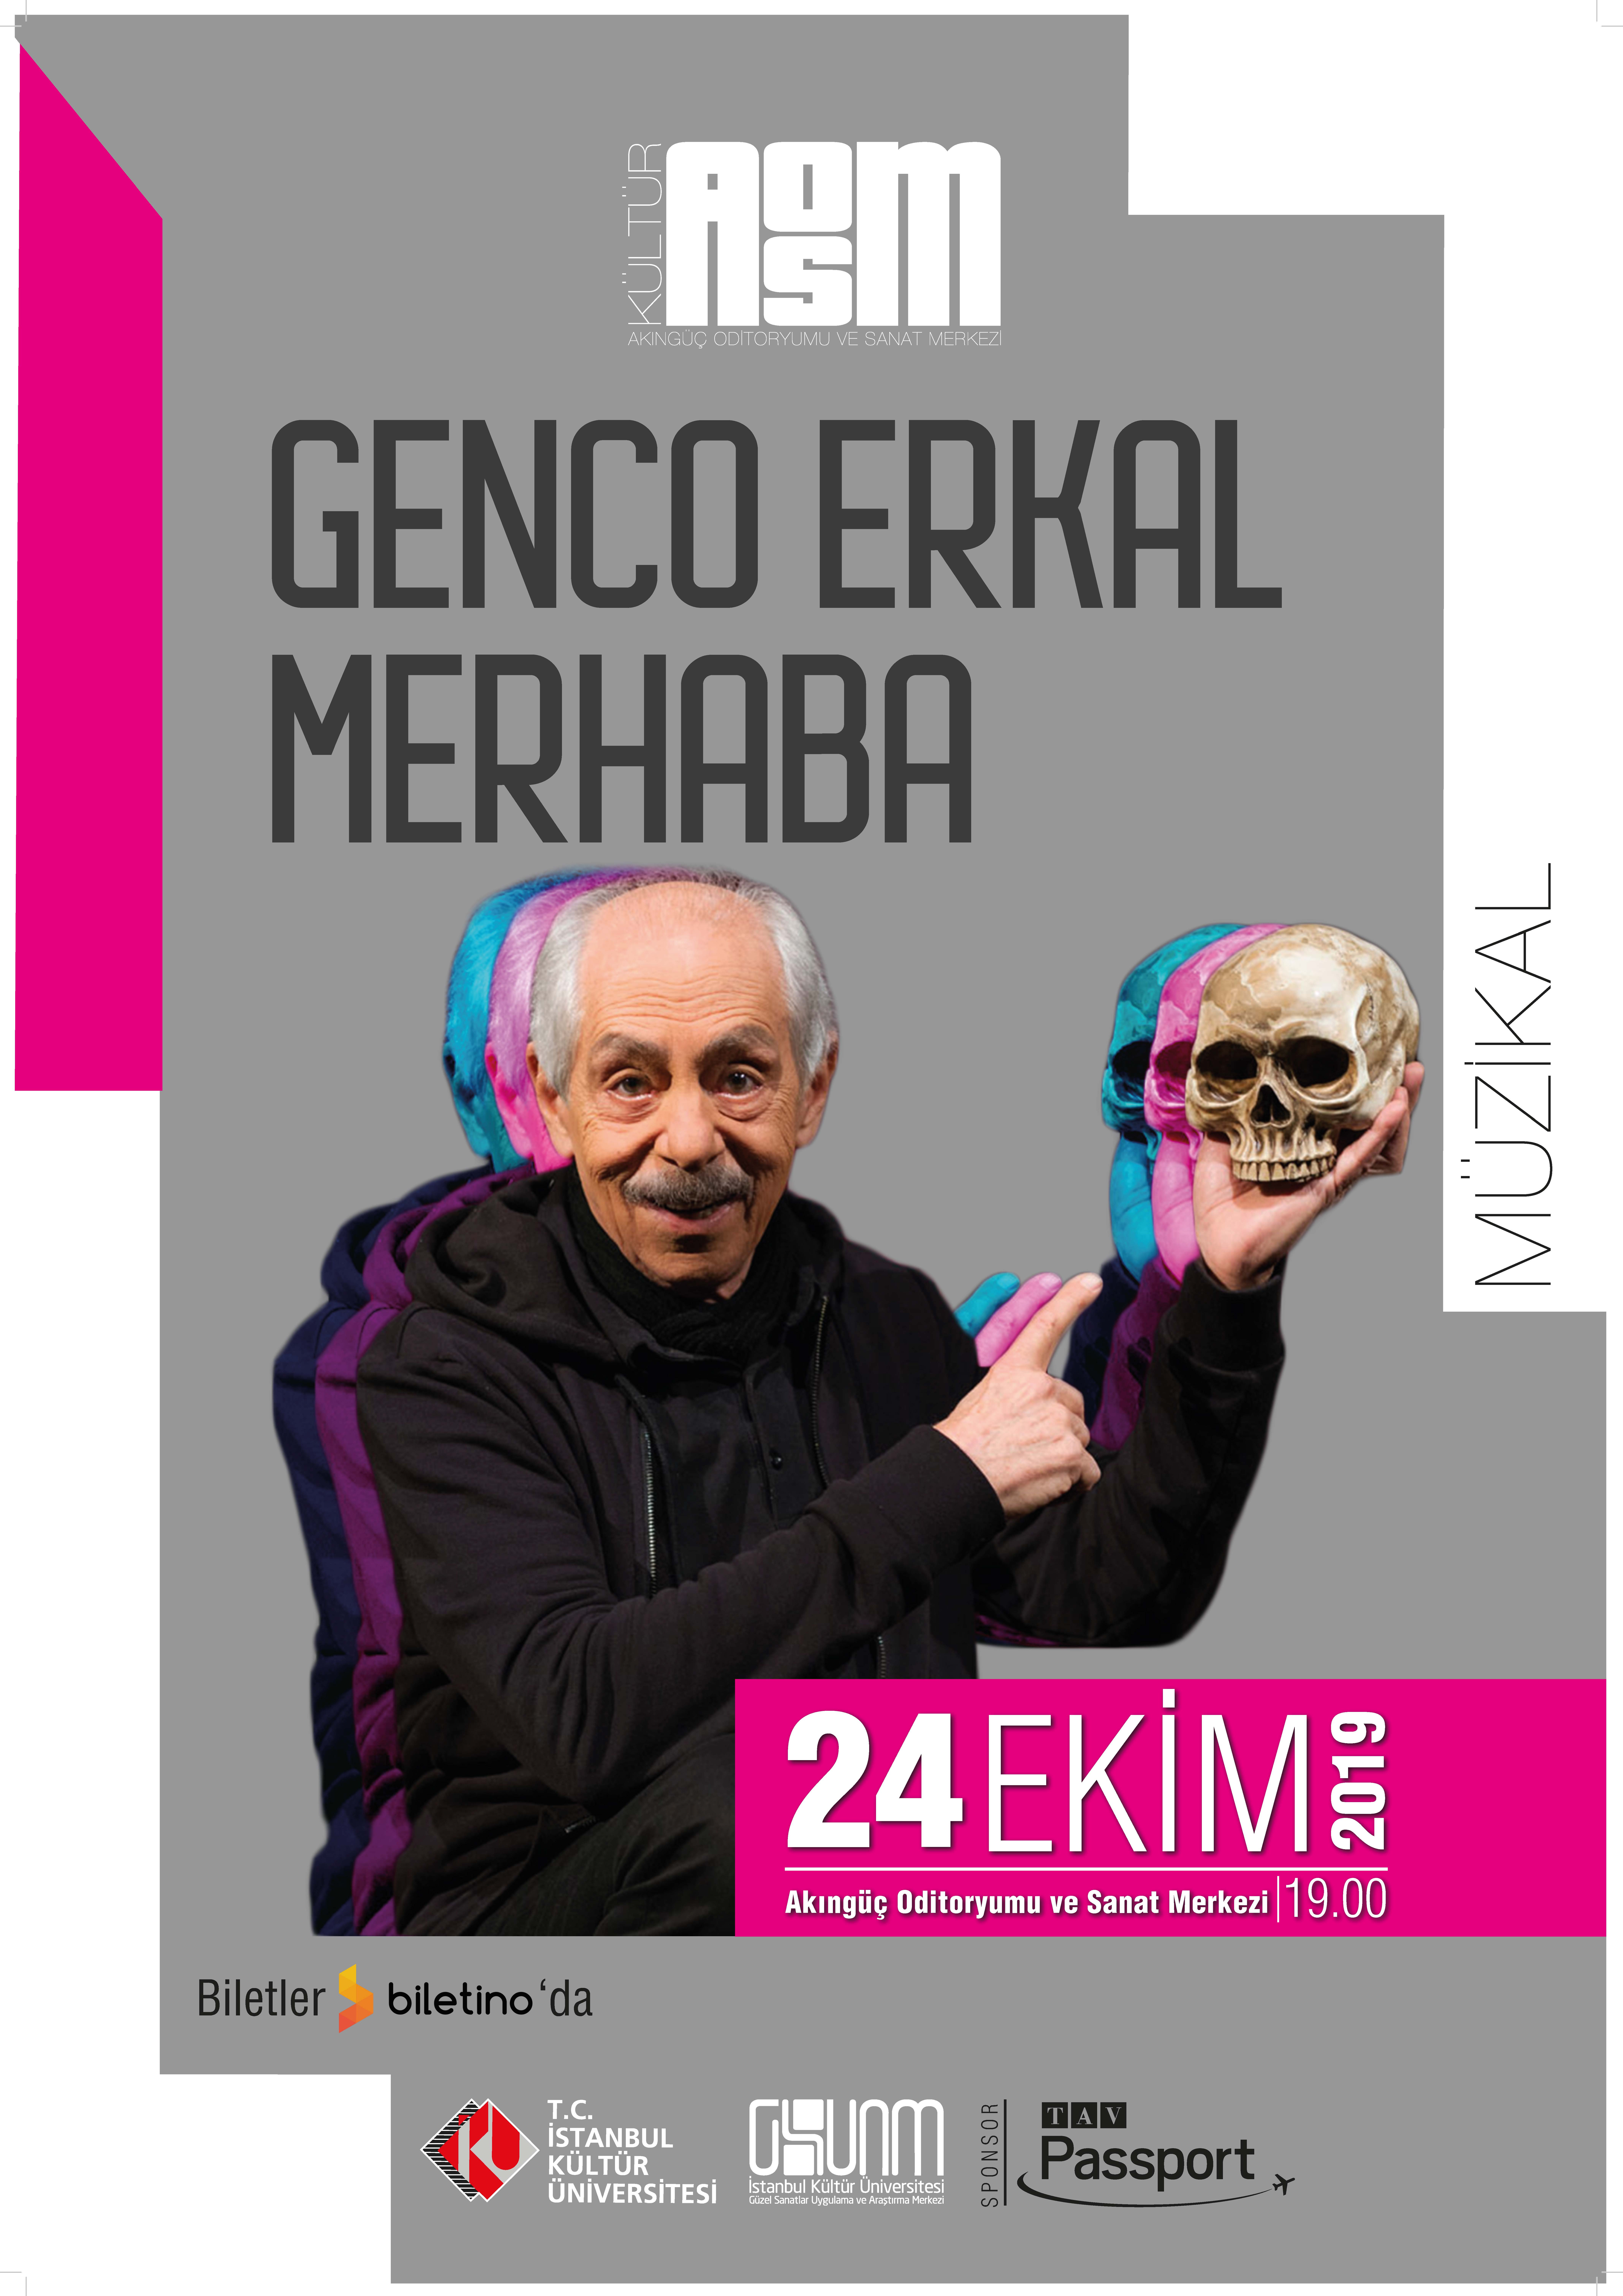 Genco Erkal - "Merhaba" Tiyatro Oyunu